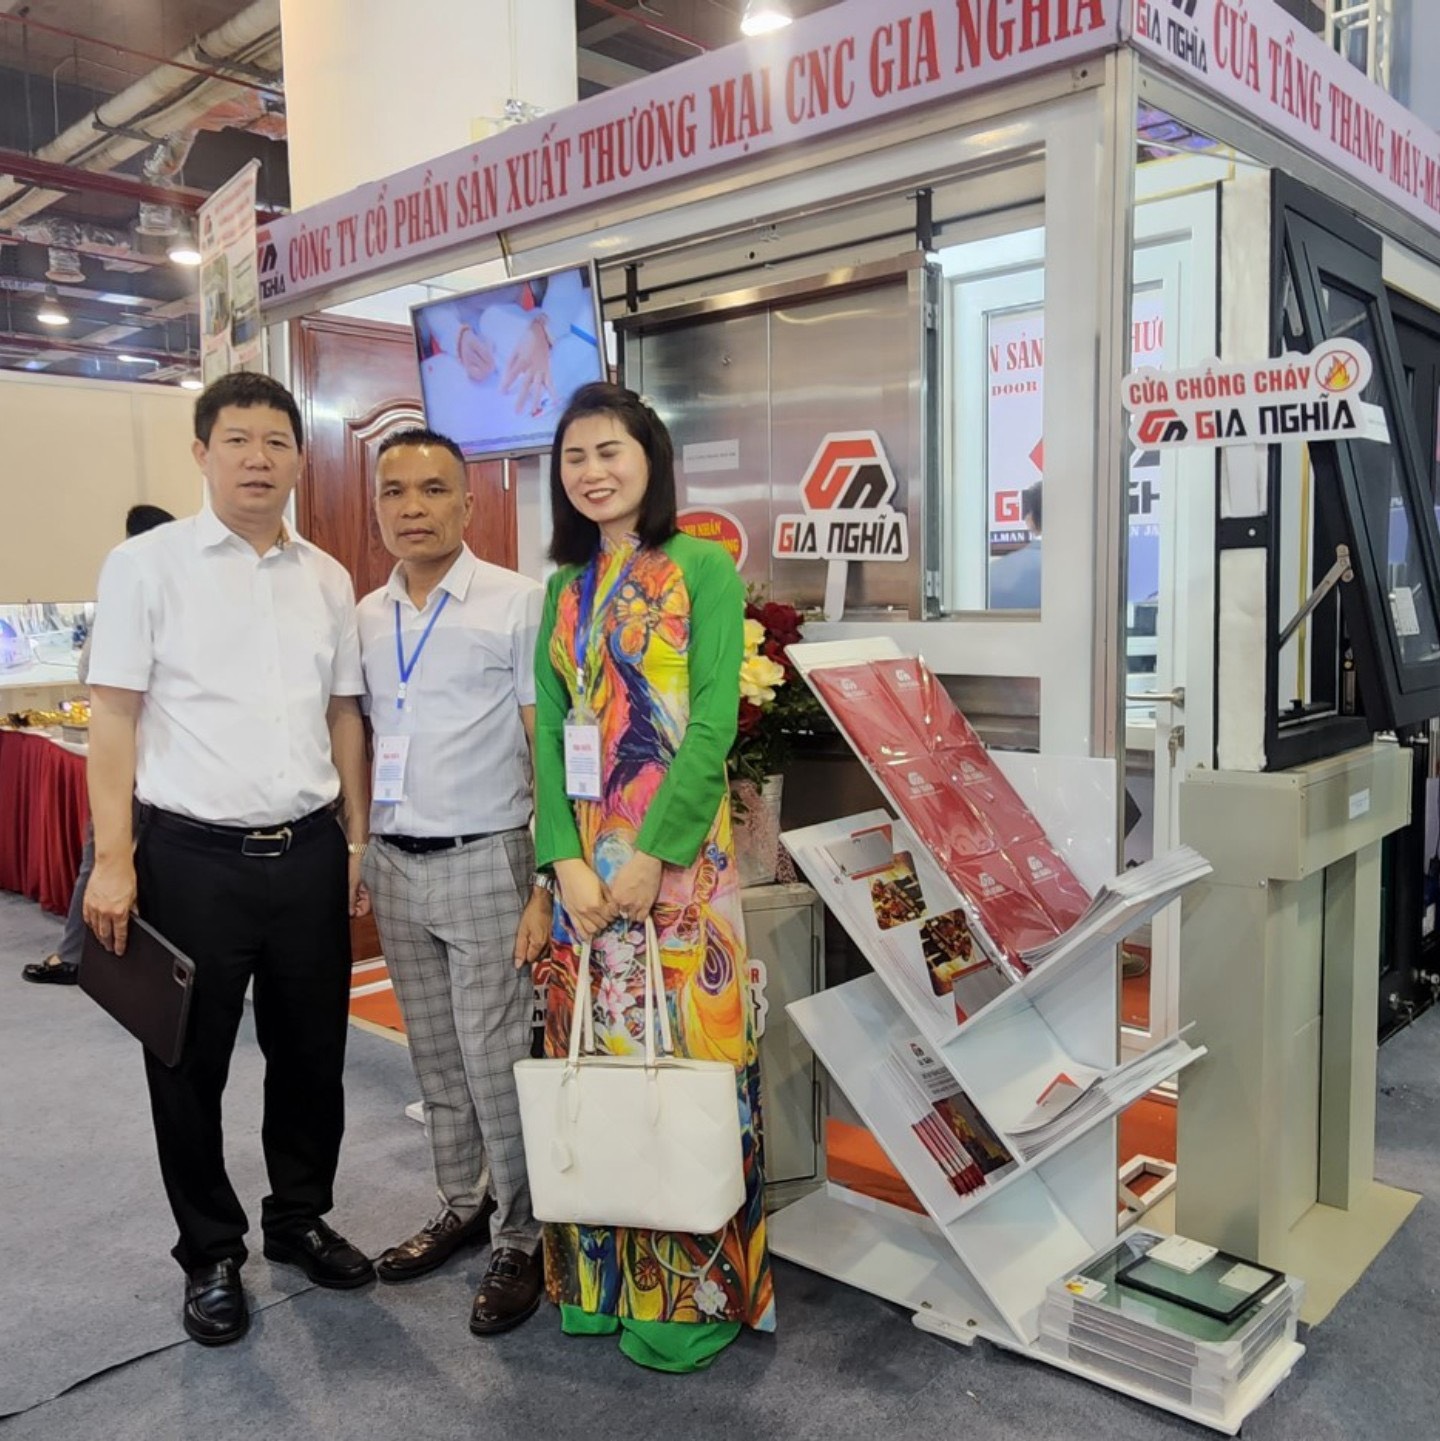 Sự kiện triển lãm, xúc tiến thương mại có sự tham gia của gần 150 gian hàng trưng bày của nhiều thương hiệu lớn, uy tín đến từ các doanh nghiệp hội viên Hội Doanh nhân trẻ Việt Nam trên cả nước